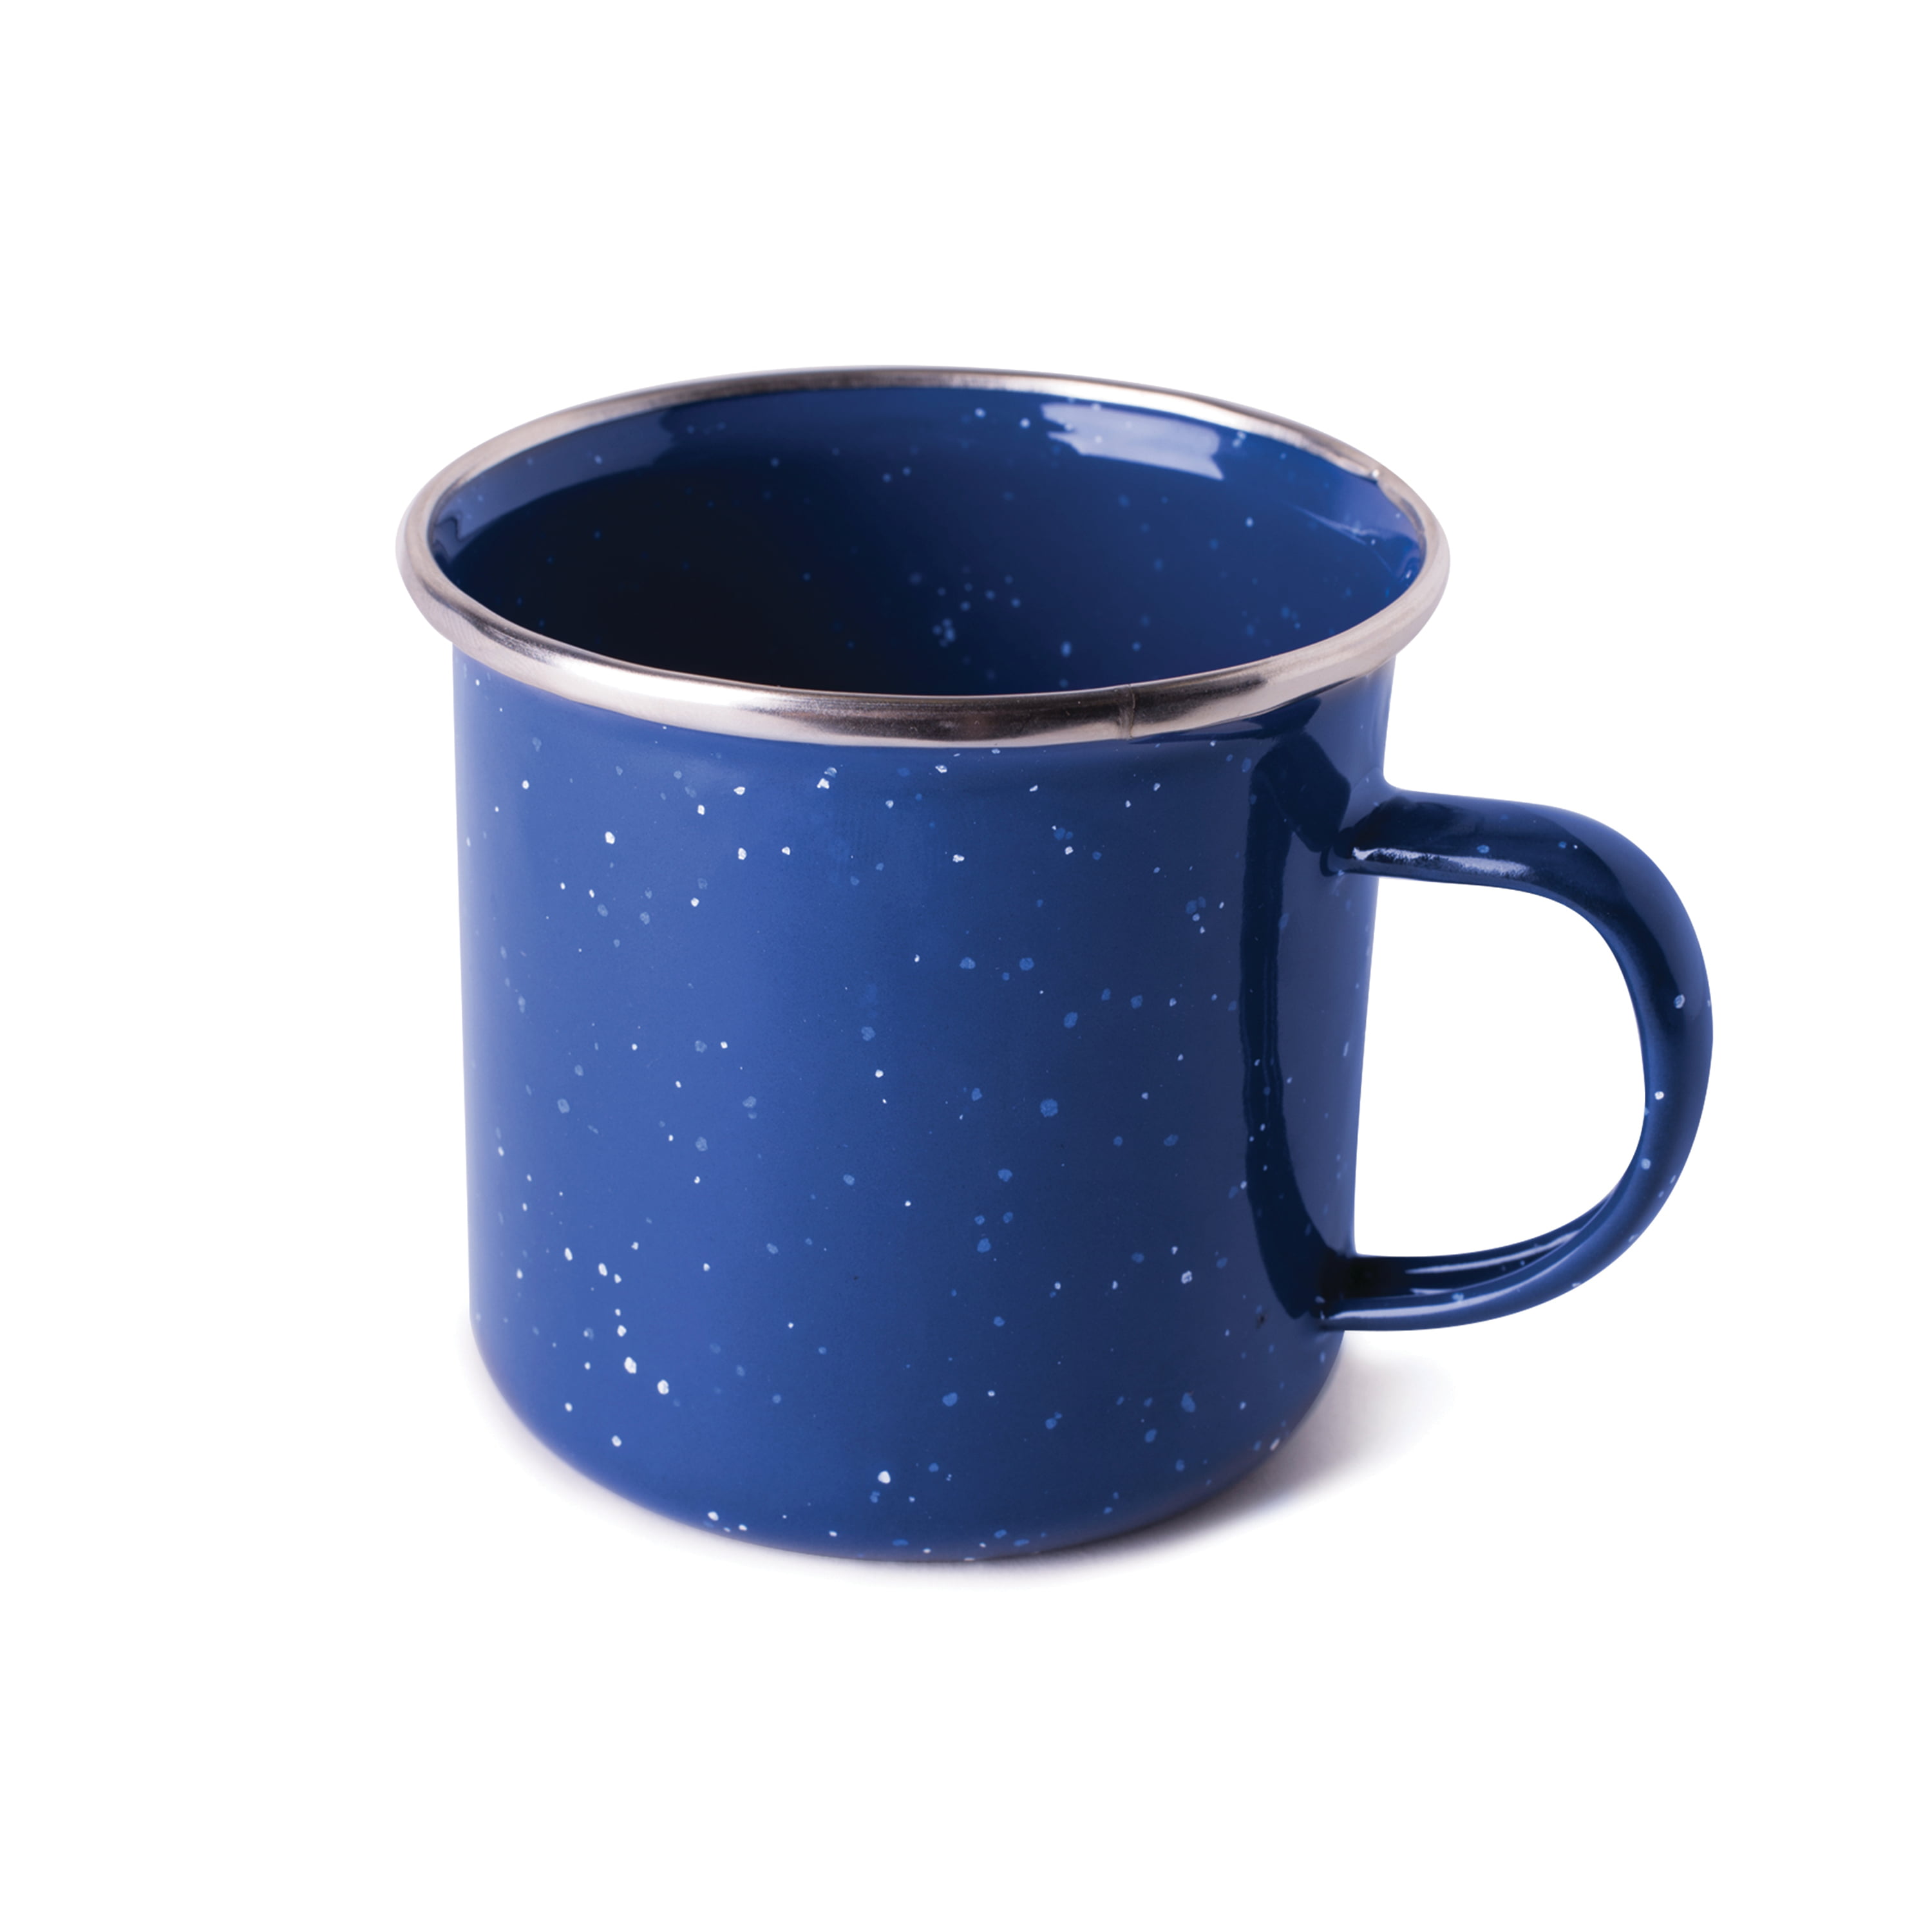 Stansport Enamel Coffee Mug 12 Oz